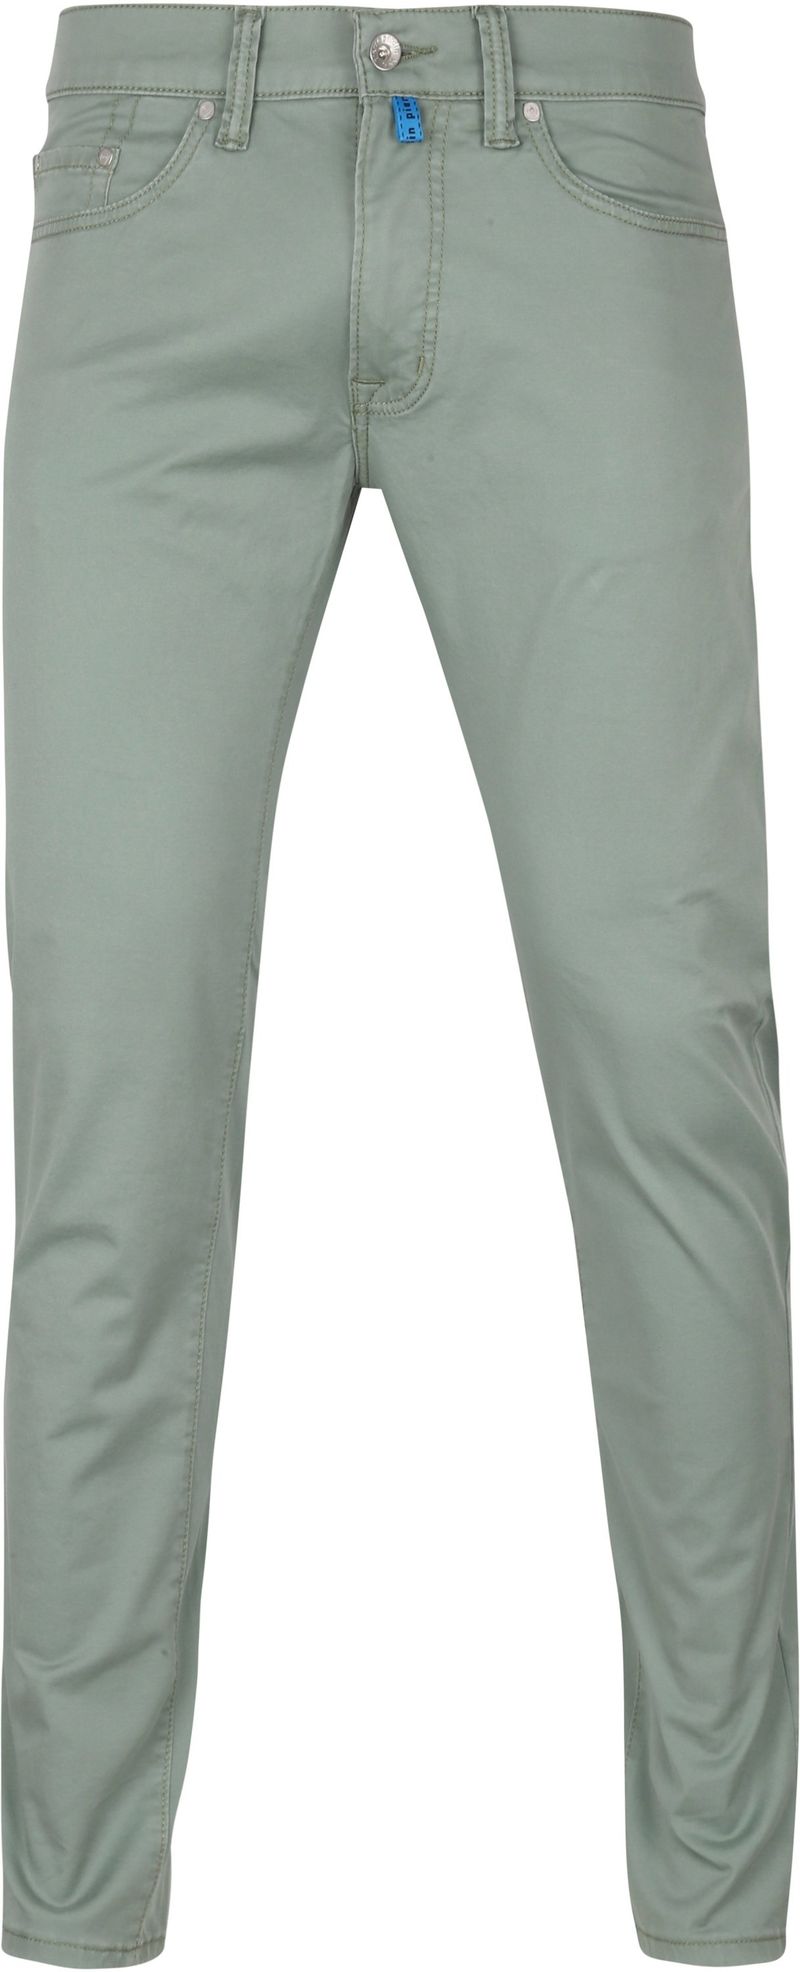 Pierre Cardin Jeans Antibes Future Flex Grün - Größe W 31 - L 32 günstig online kaufen